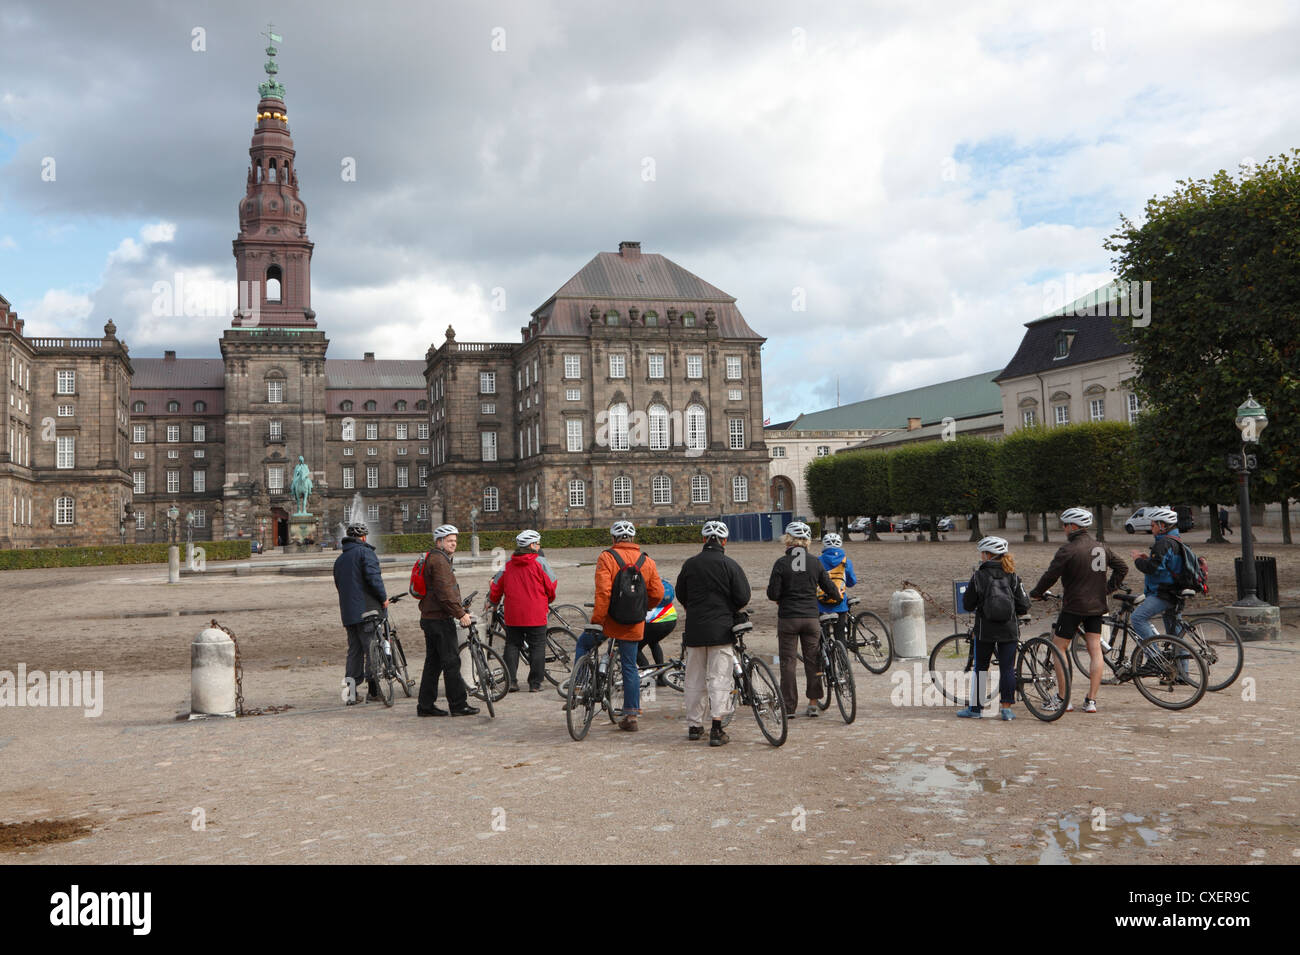 Touristen auf einem geführten Fahrrad tour Schloss Christiansborg, einer spät Sommer / Herbst Nachmittag. Kopenhagen, Dänemark. Stockfoto